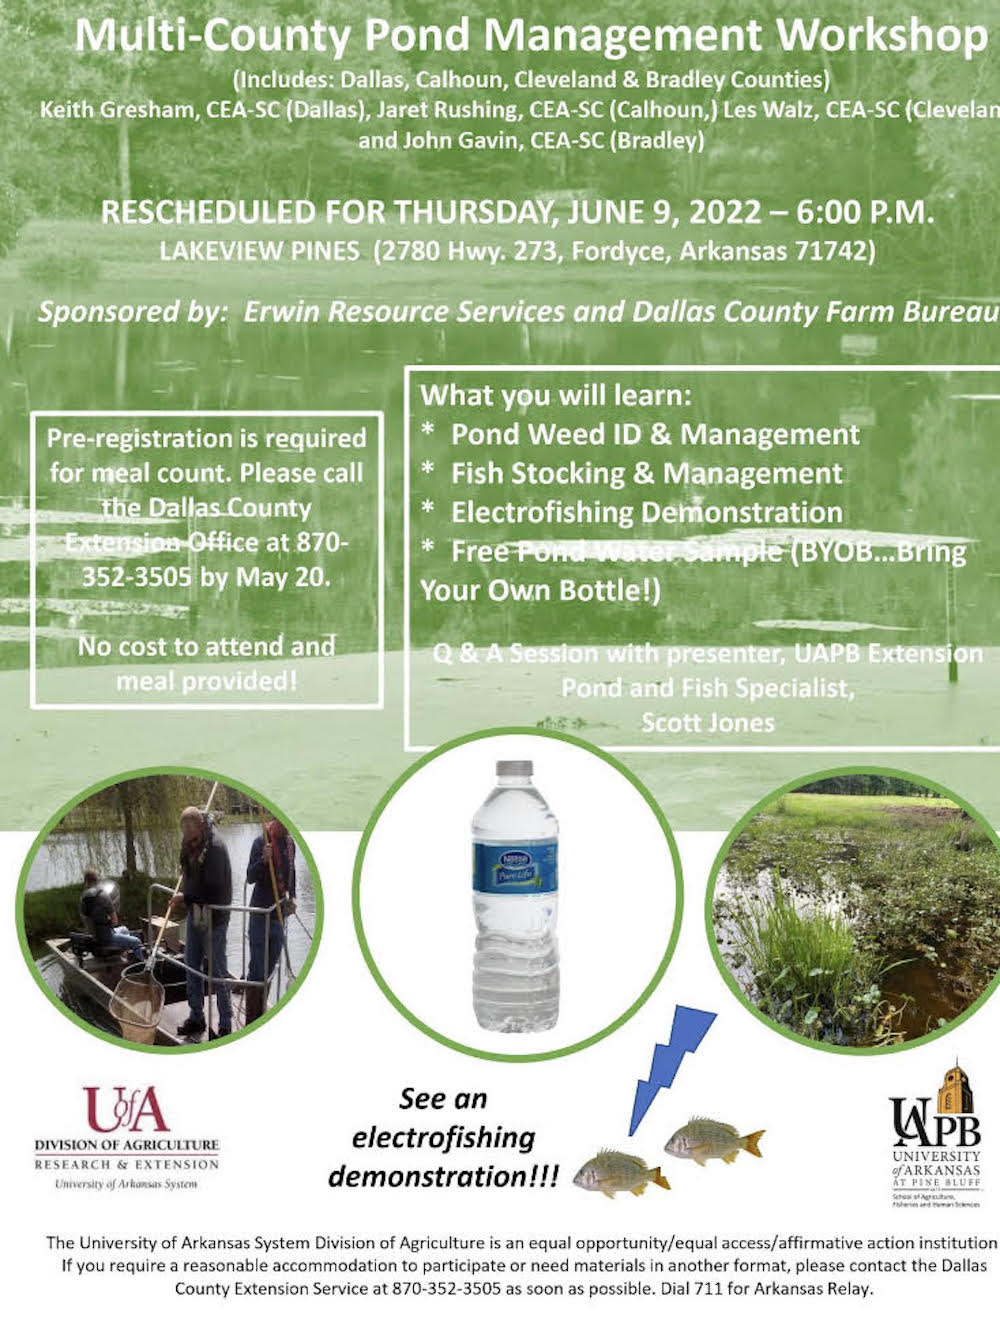 Pond Management workshop set for June 9